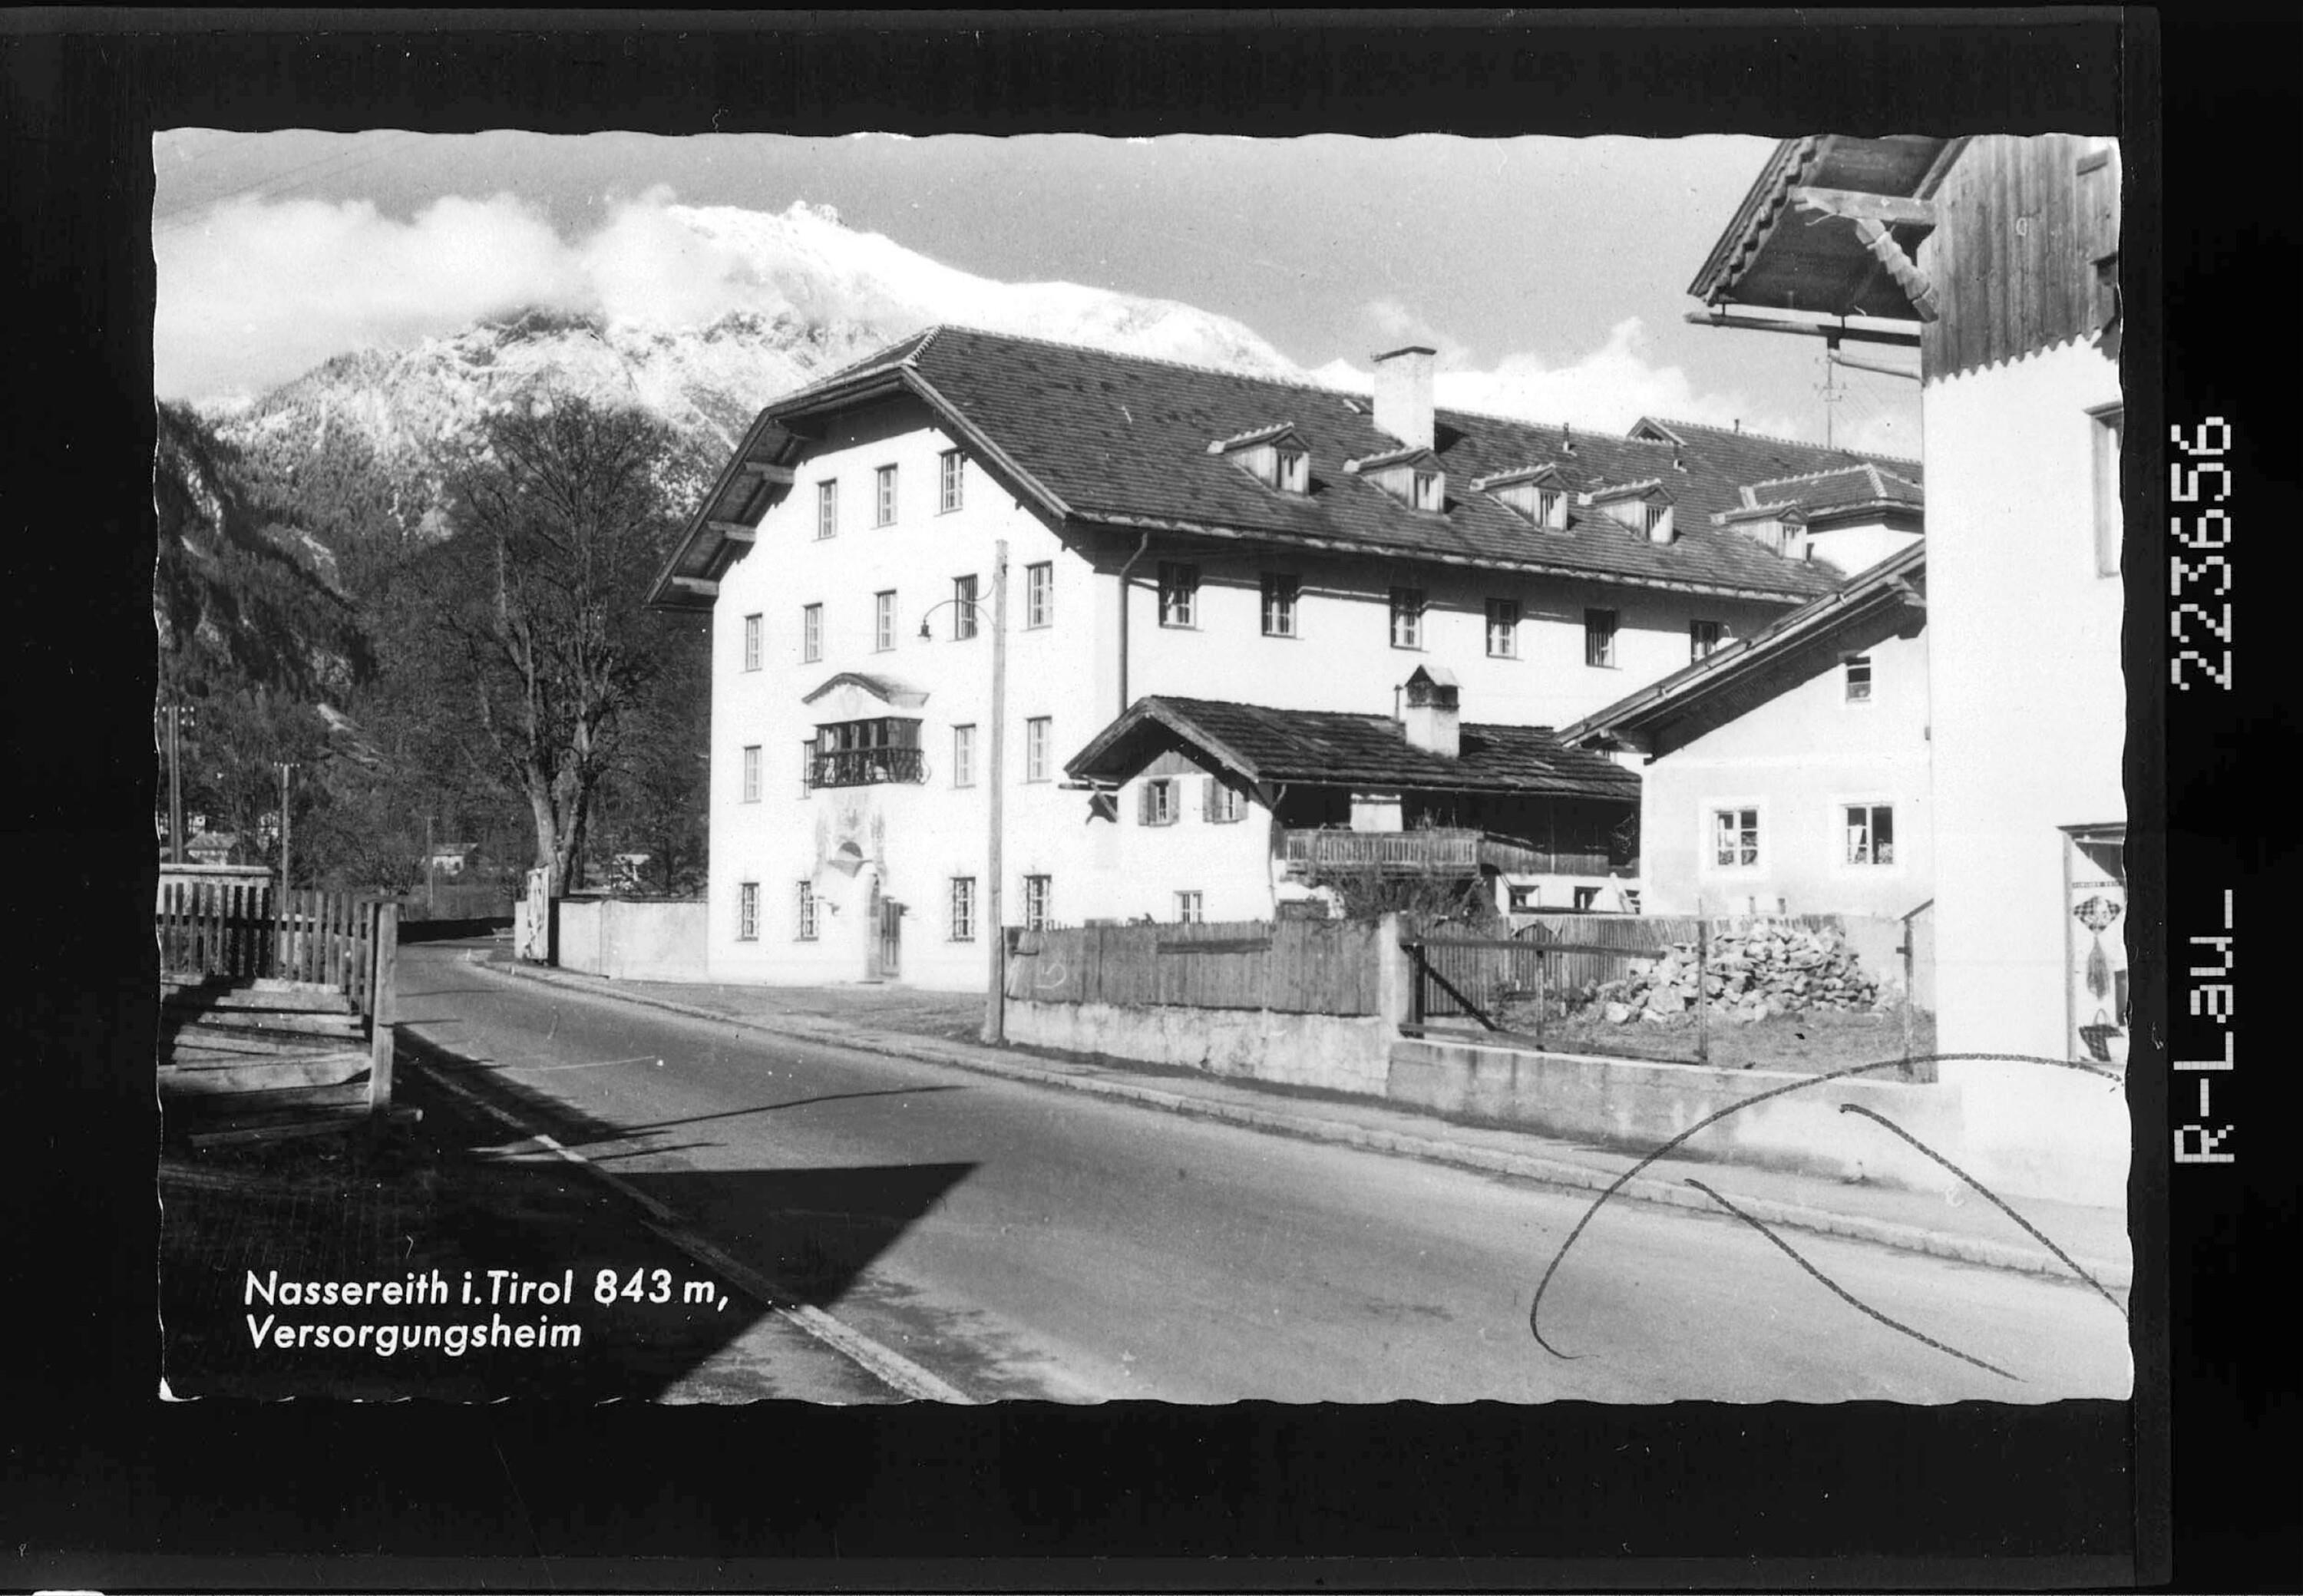 Nassereith in Tirol 843 m / Versorgungsheim></div>


    <hr>
    <div class=